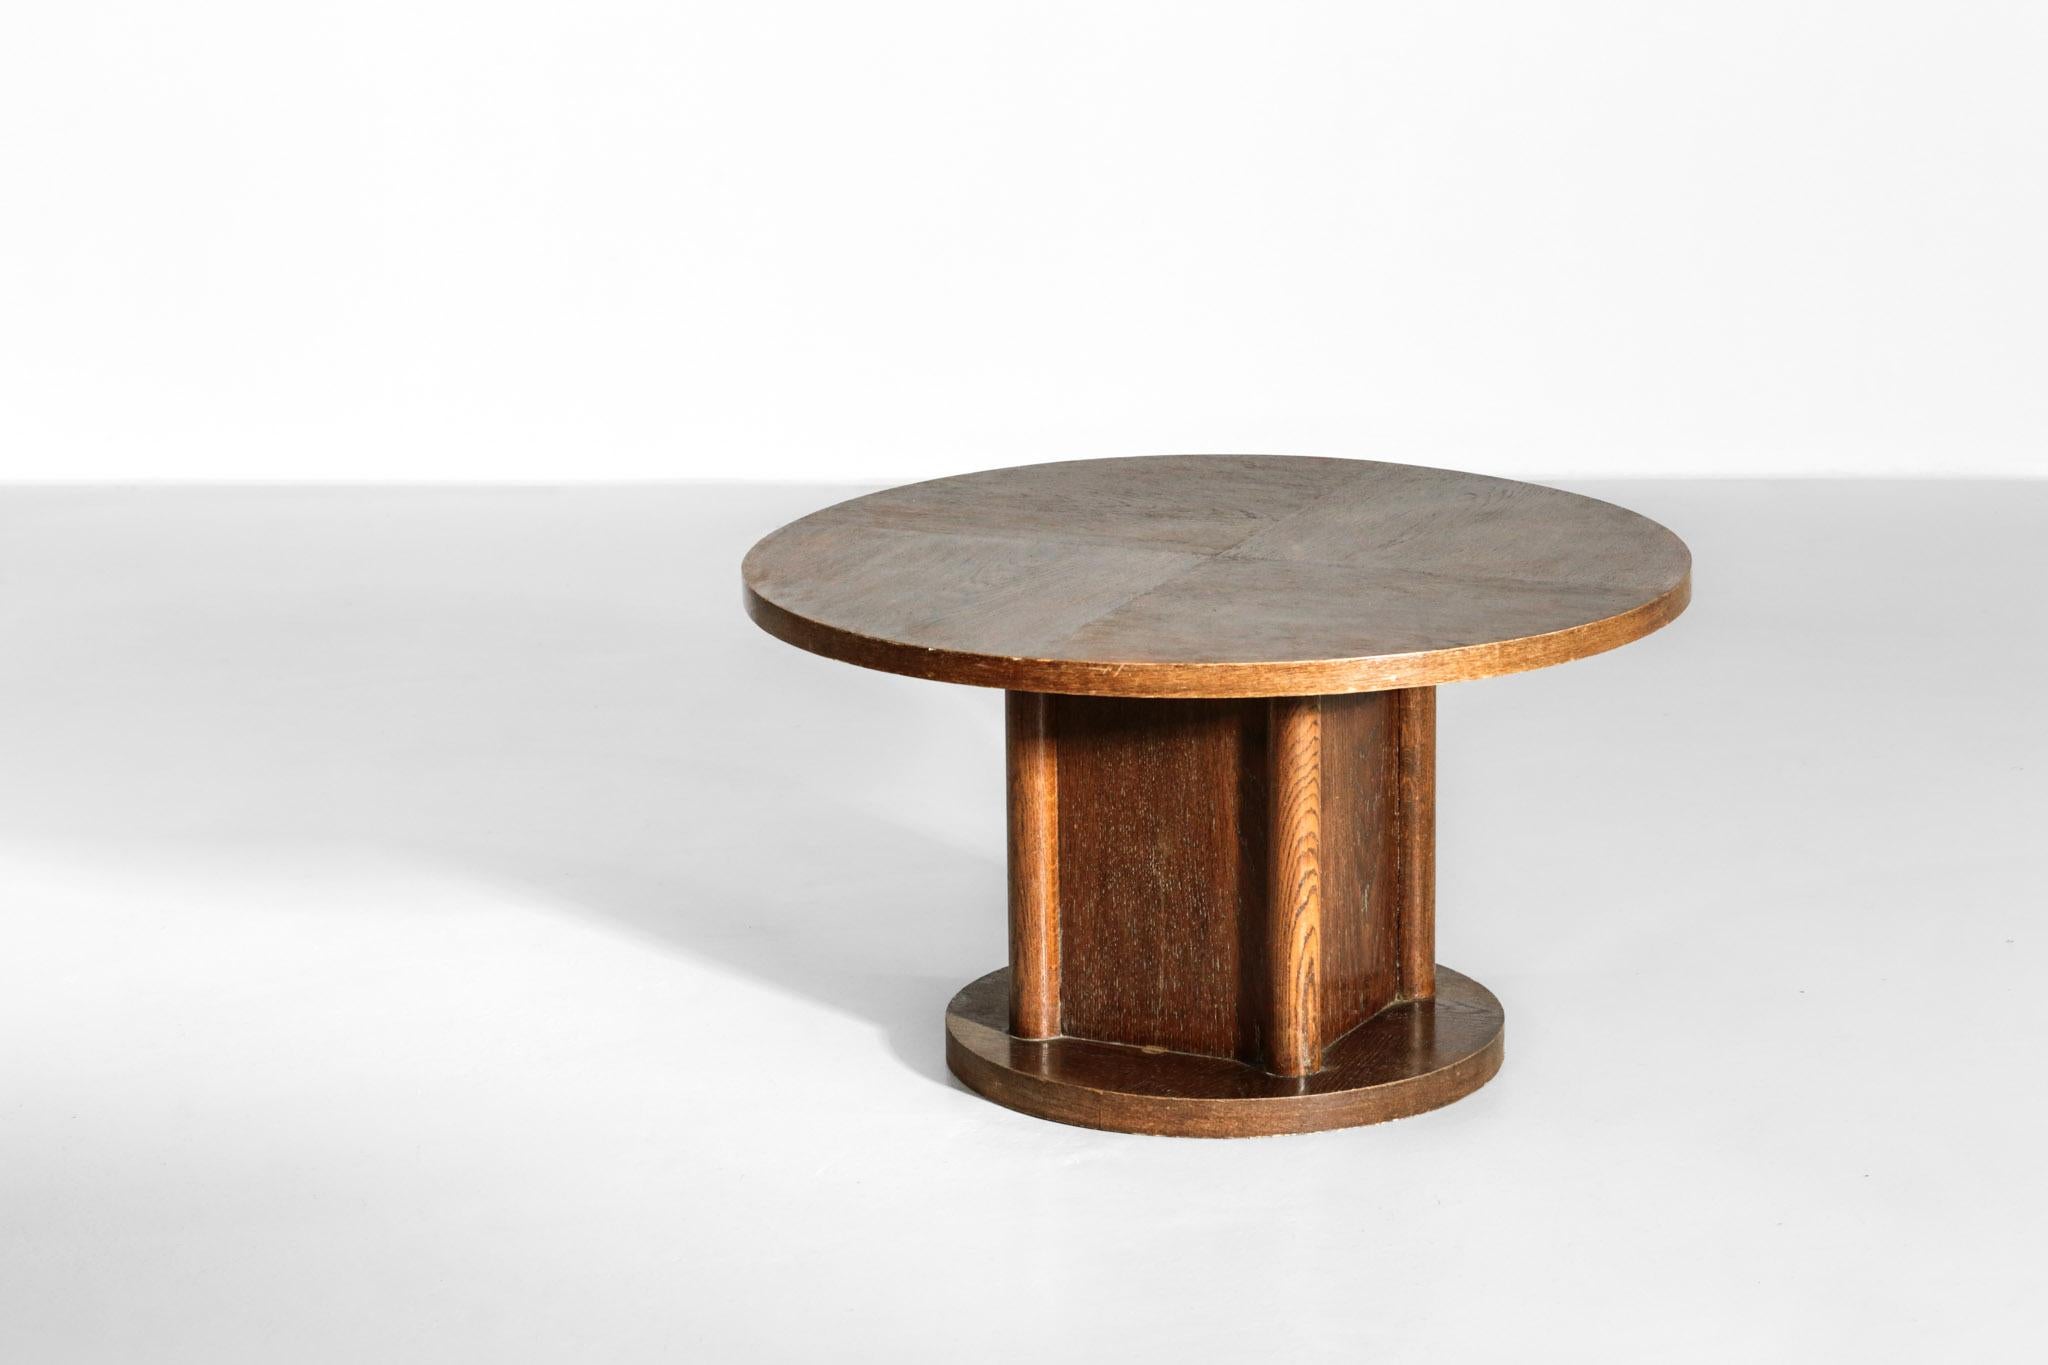 European Modernist Coffee or Side Table in Oak, 1940s